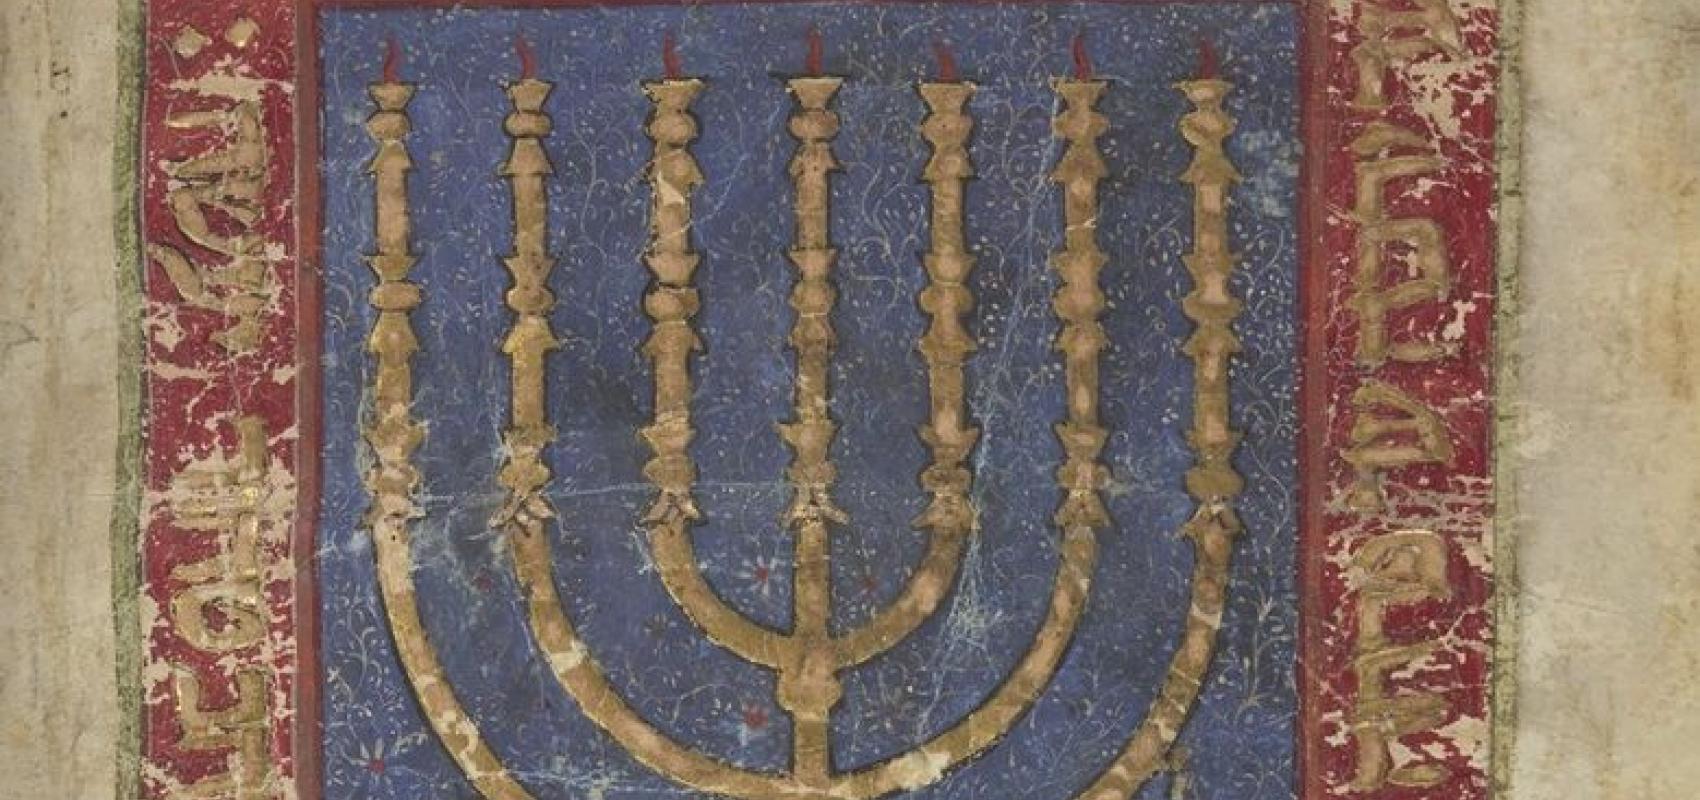 Bible hébraïque du nord de la Péninsule ibérique, texte calligraphié vers la fin du XVe siècle. BnF, département des Manuscrits -  - BnF